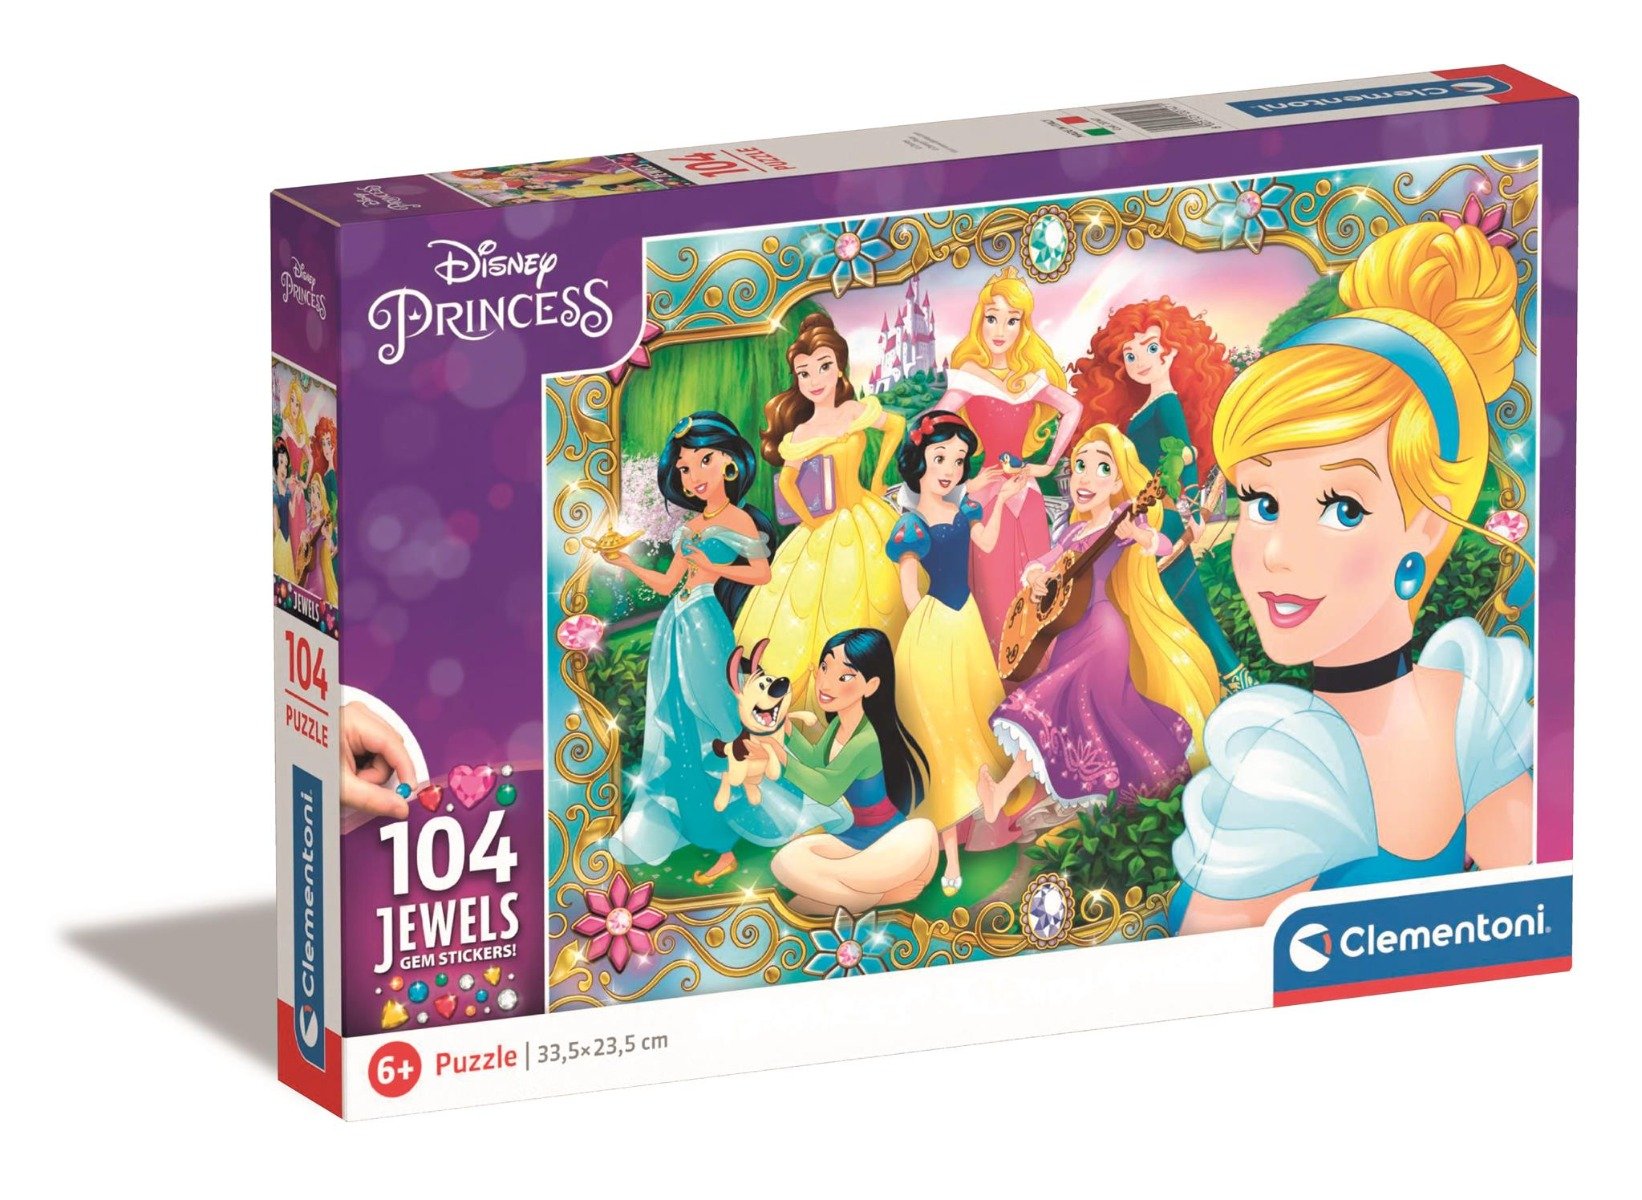 Poze Puzzle Clementoni Disney Princess Jewels, 104 piese